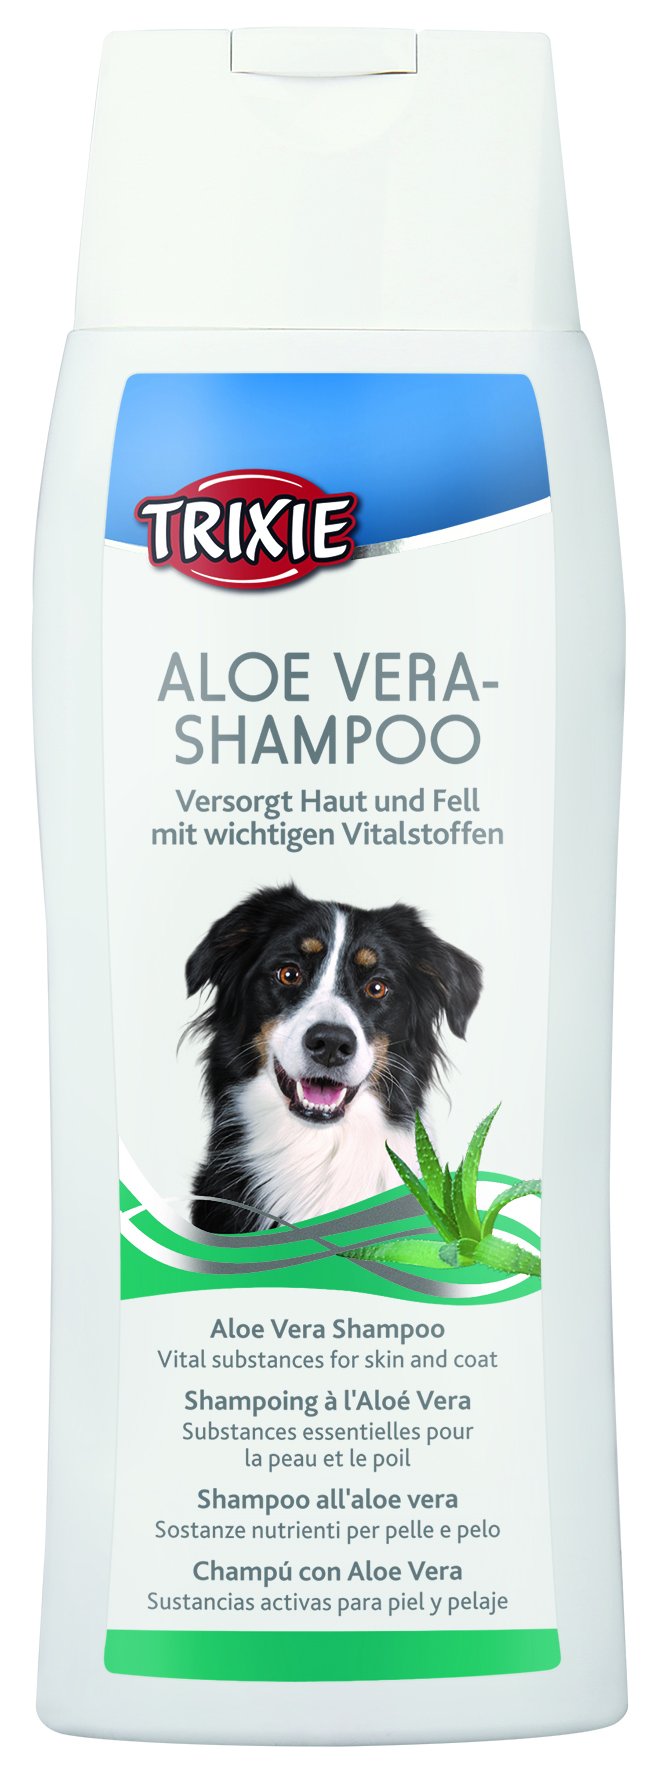 2898 Aloe Vera shampoo, 250 ml